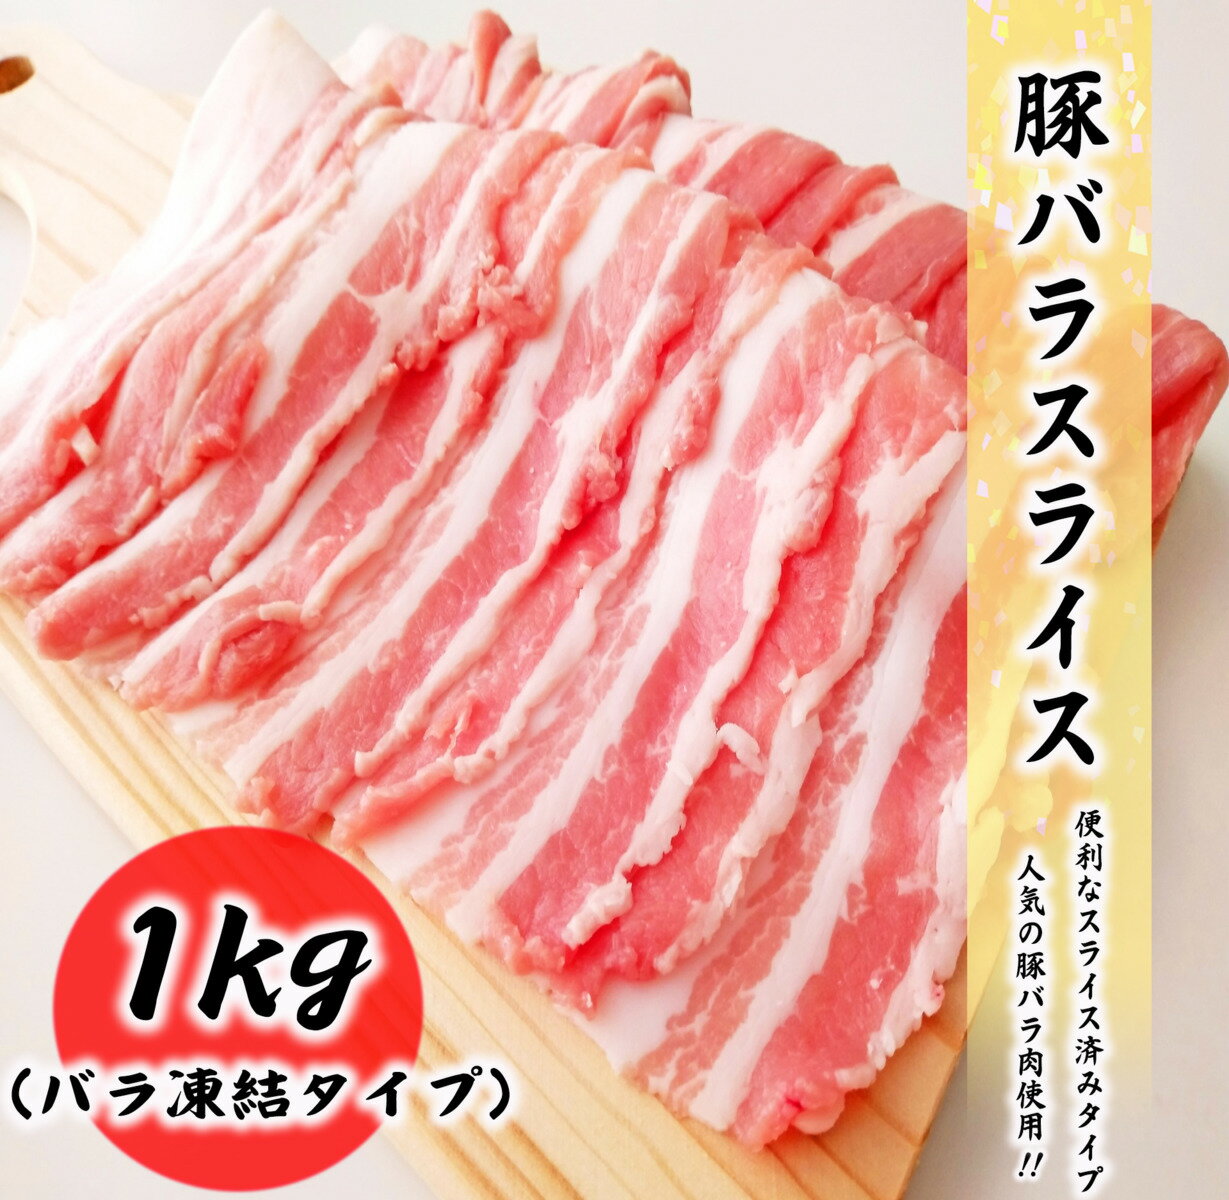 豚バラ肉 1kg 料理店でも使われる業務量 豚肉 バラ